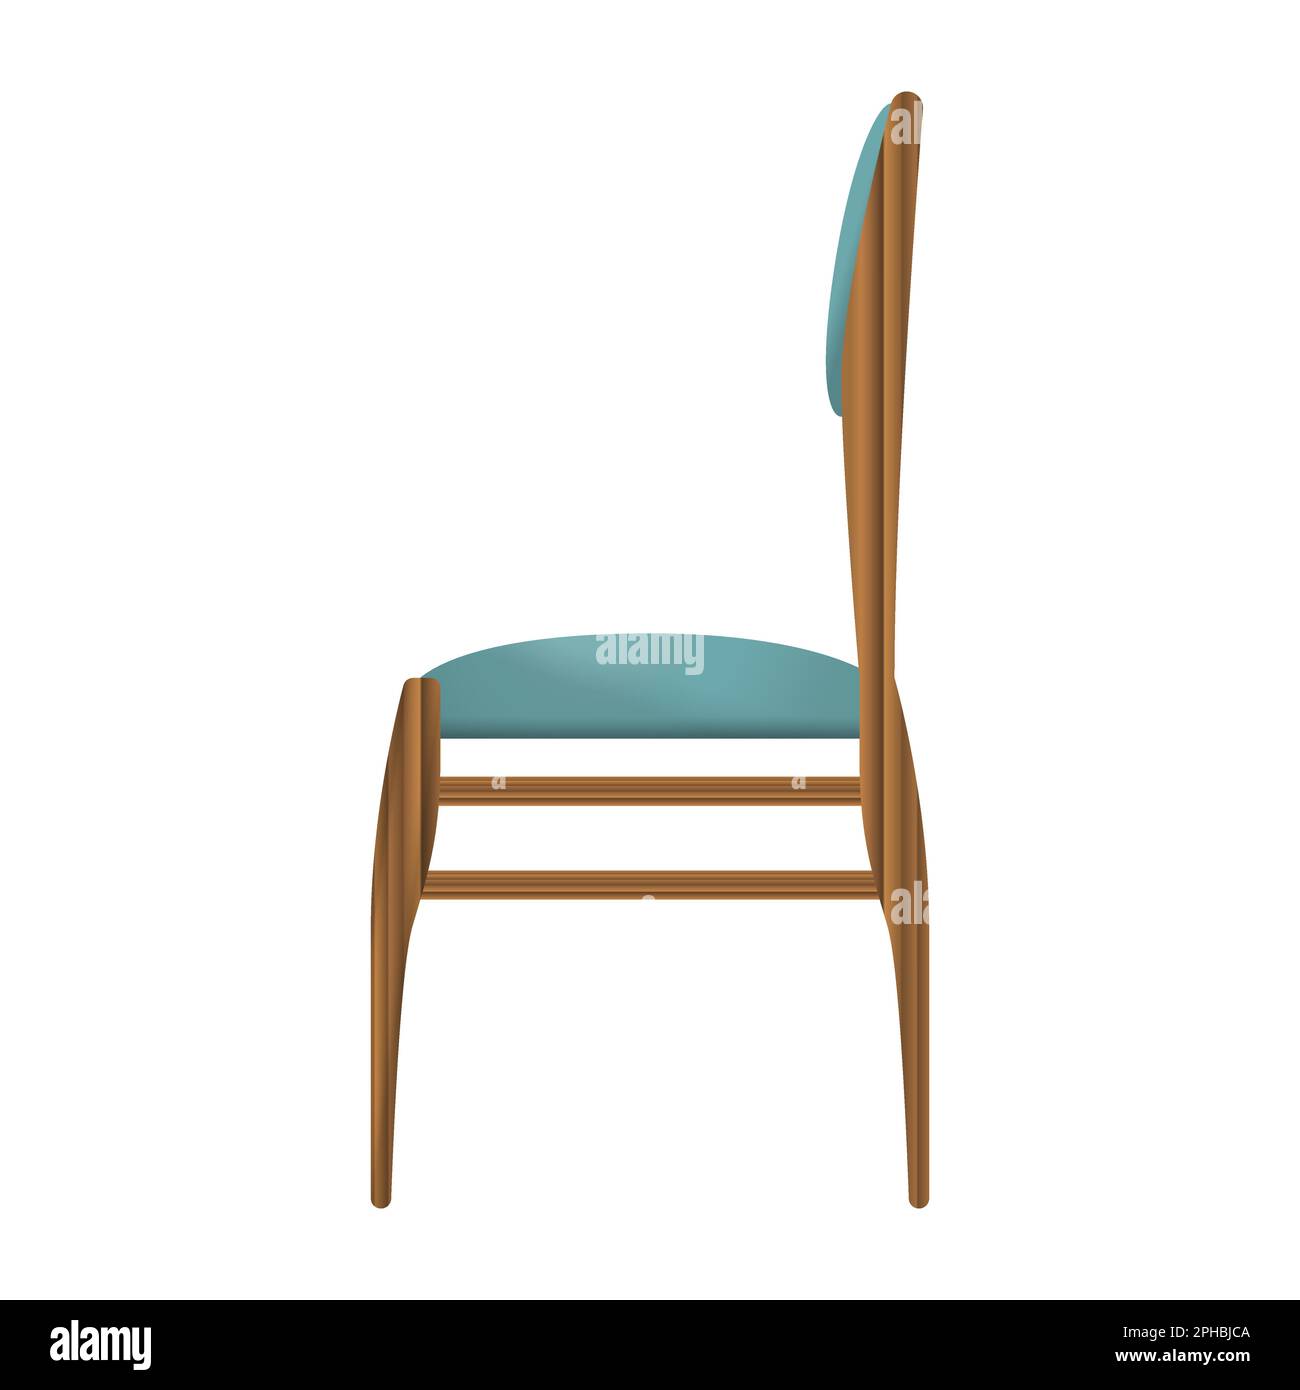 Chaise en bois sombre vue latérale dans un style réaliste. Siège turquoise. Décoration de mobilier en bois. Illustration vectorielle colorée sur fond blanc. Illustration de Vecteur